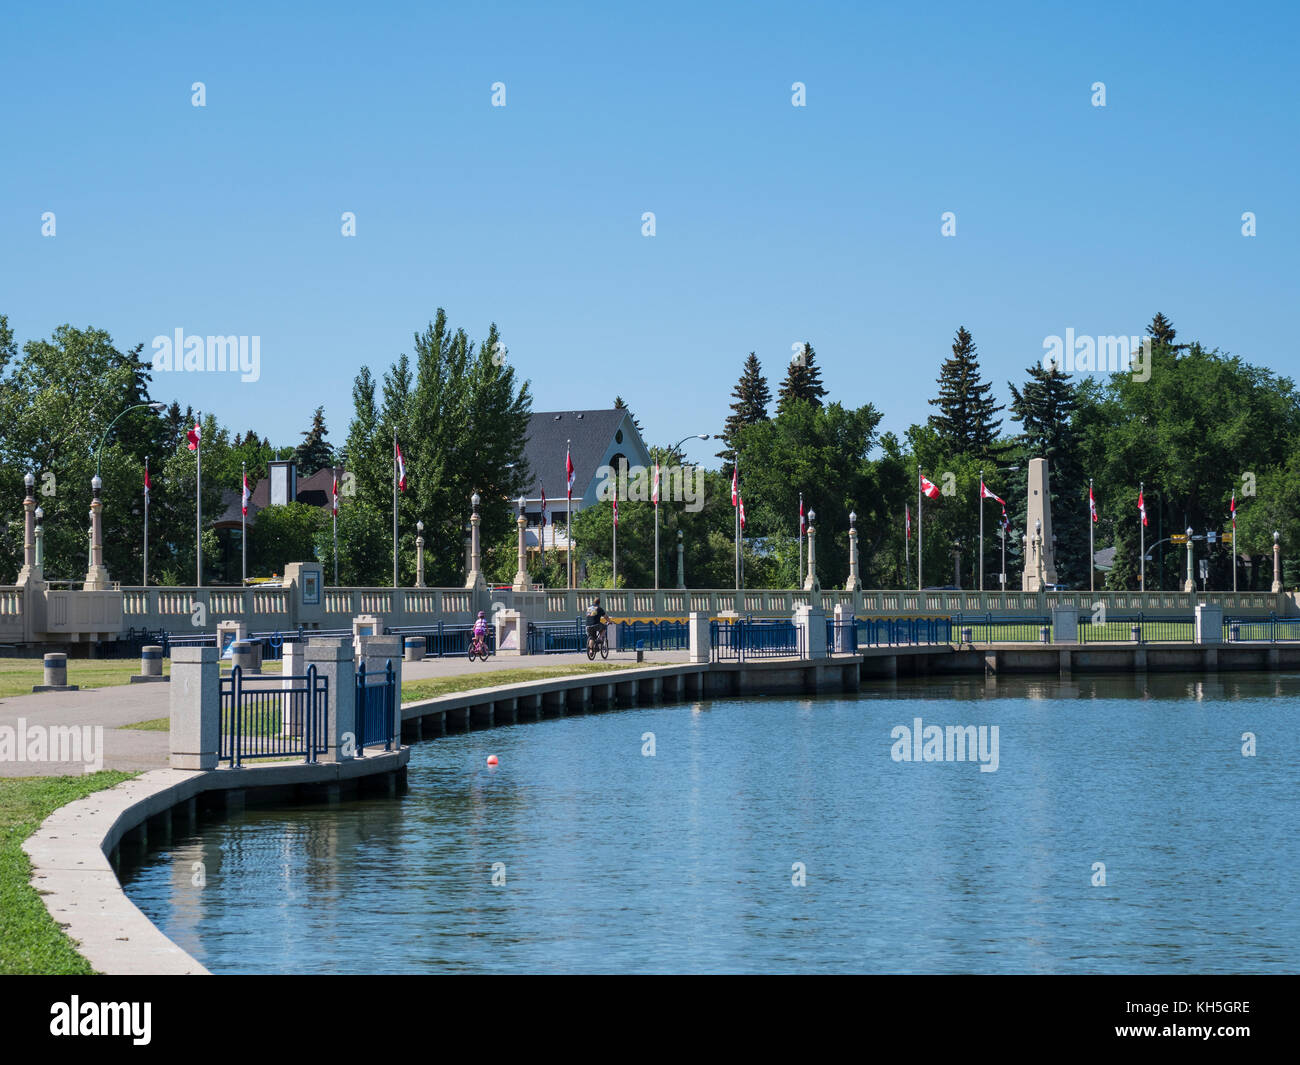 Bridge, dam and flags, Wascana Lake, Regina, Saskatchewan, Canada. Stock Photo